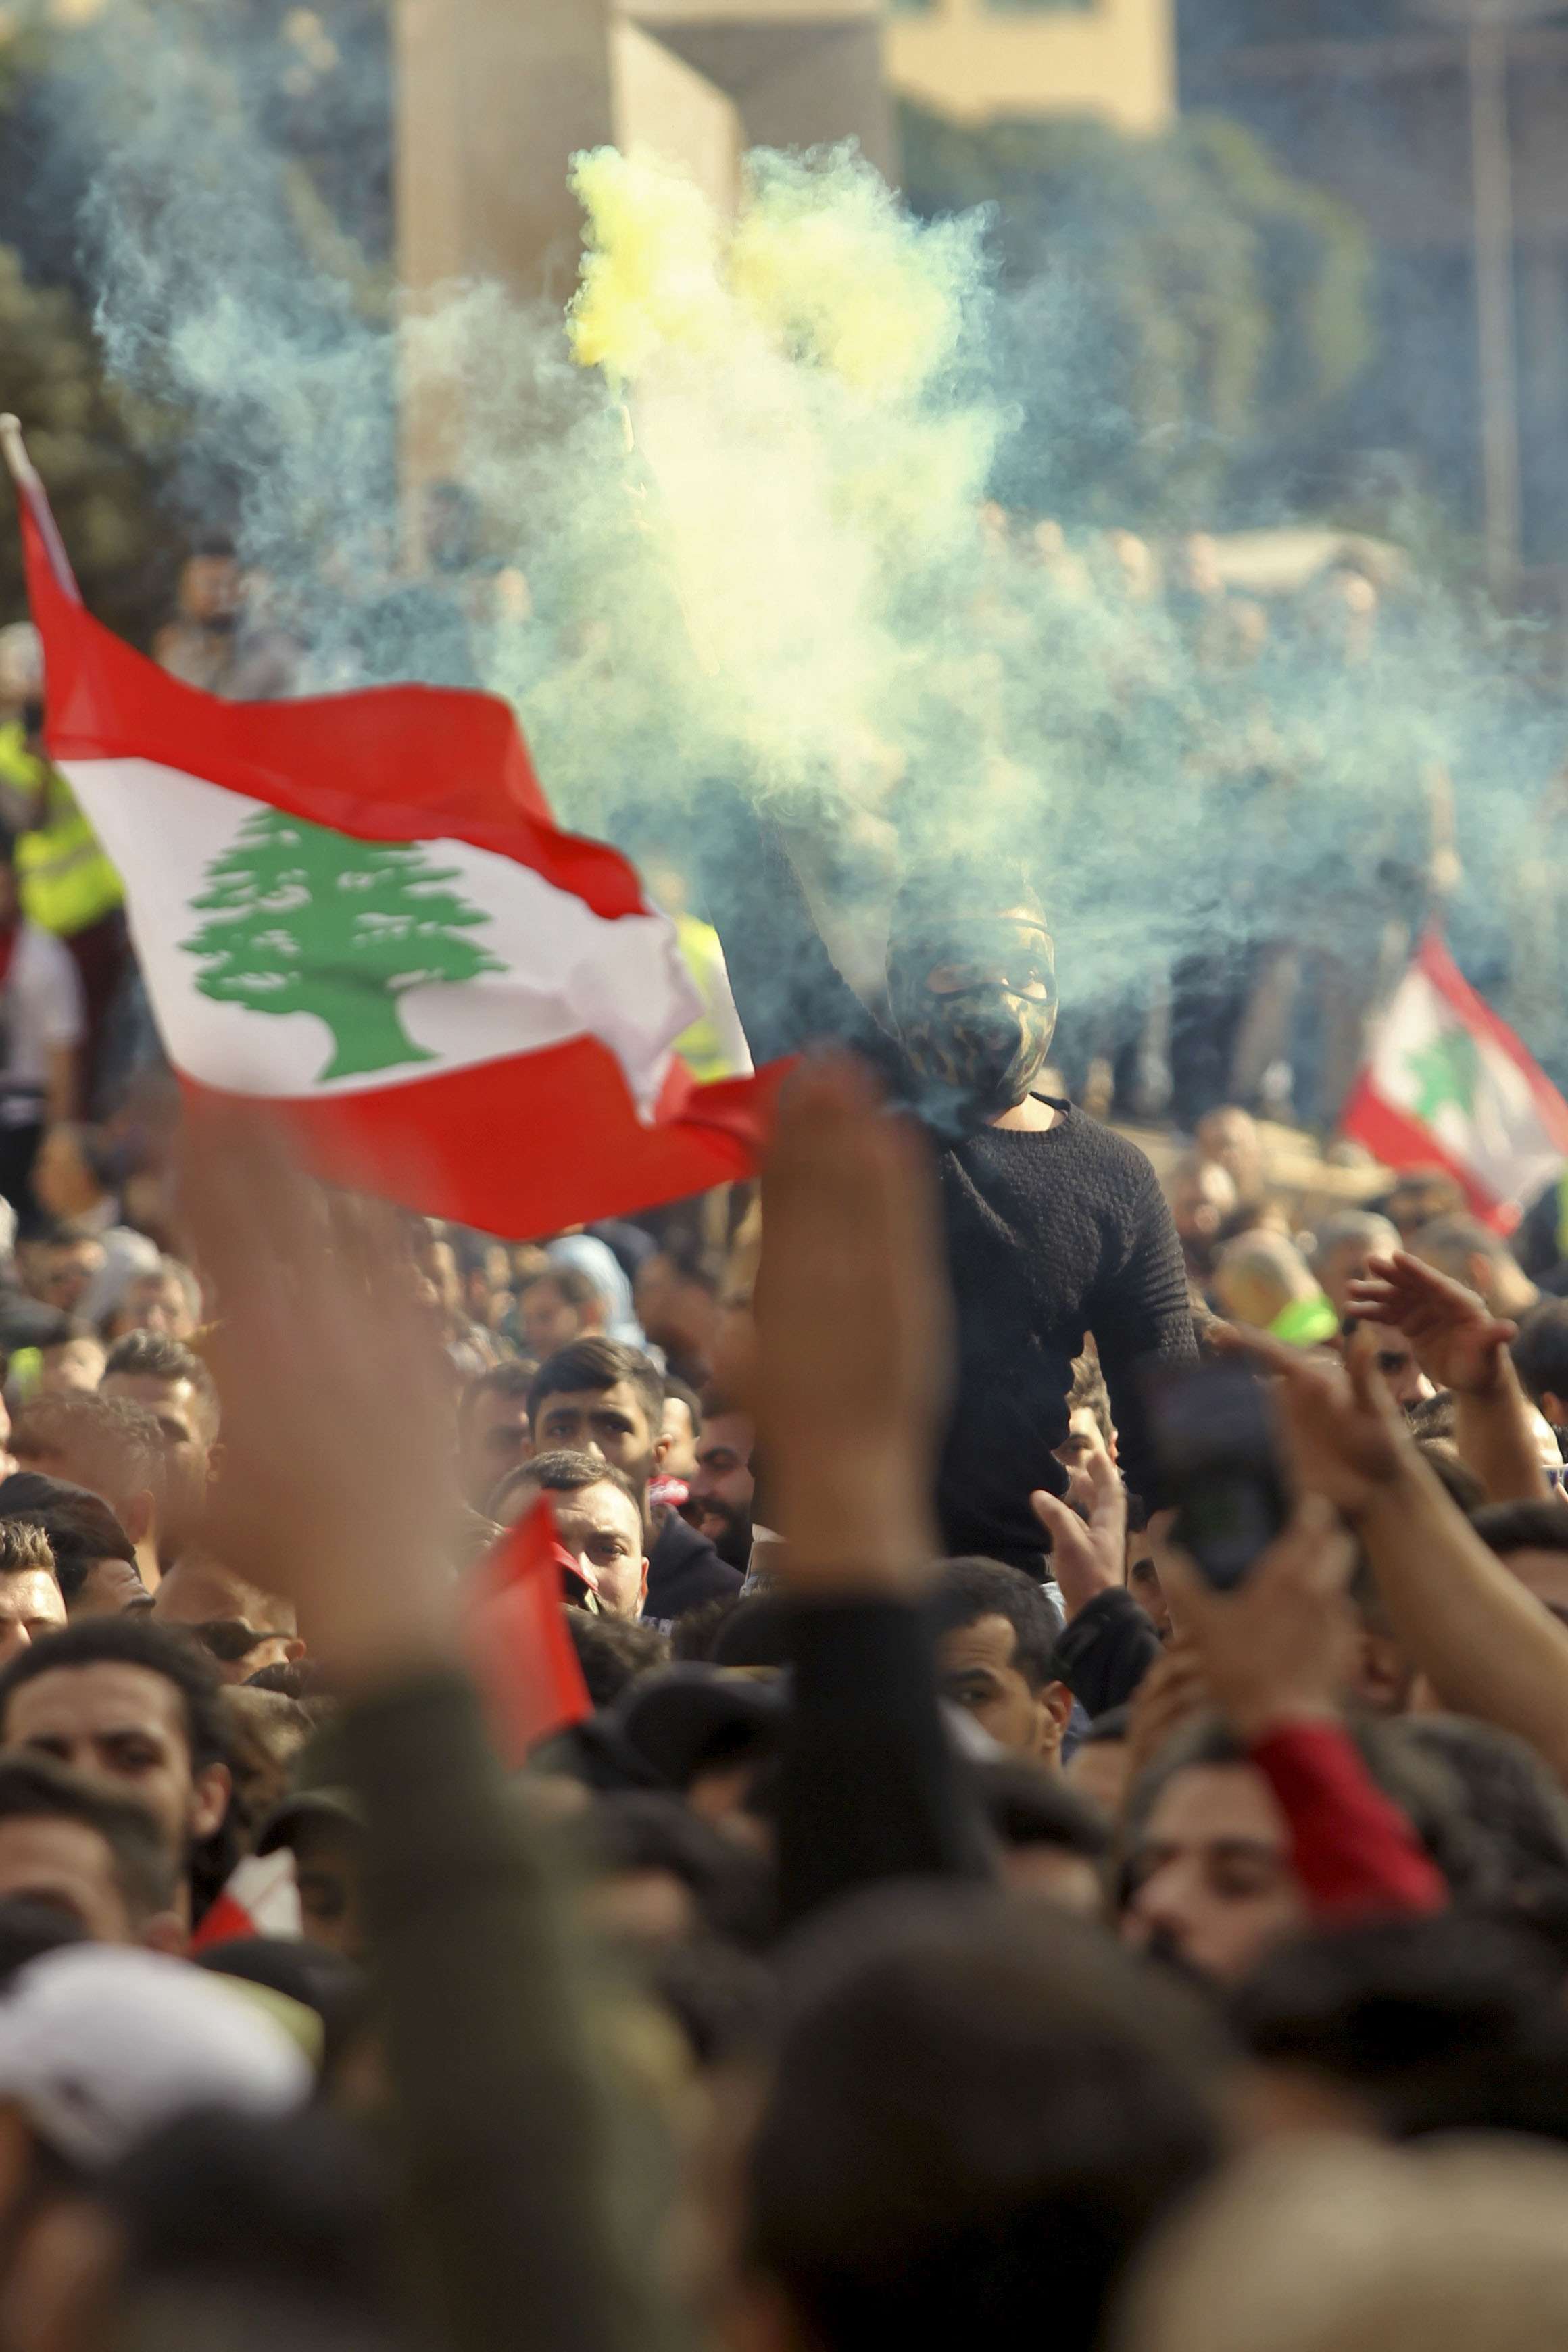 متظاهرون لبنانيون